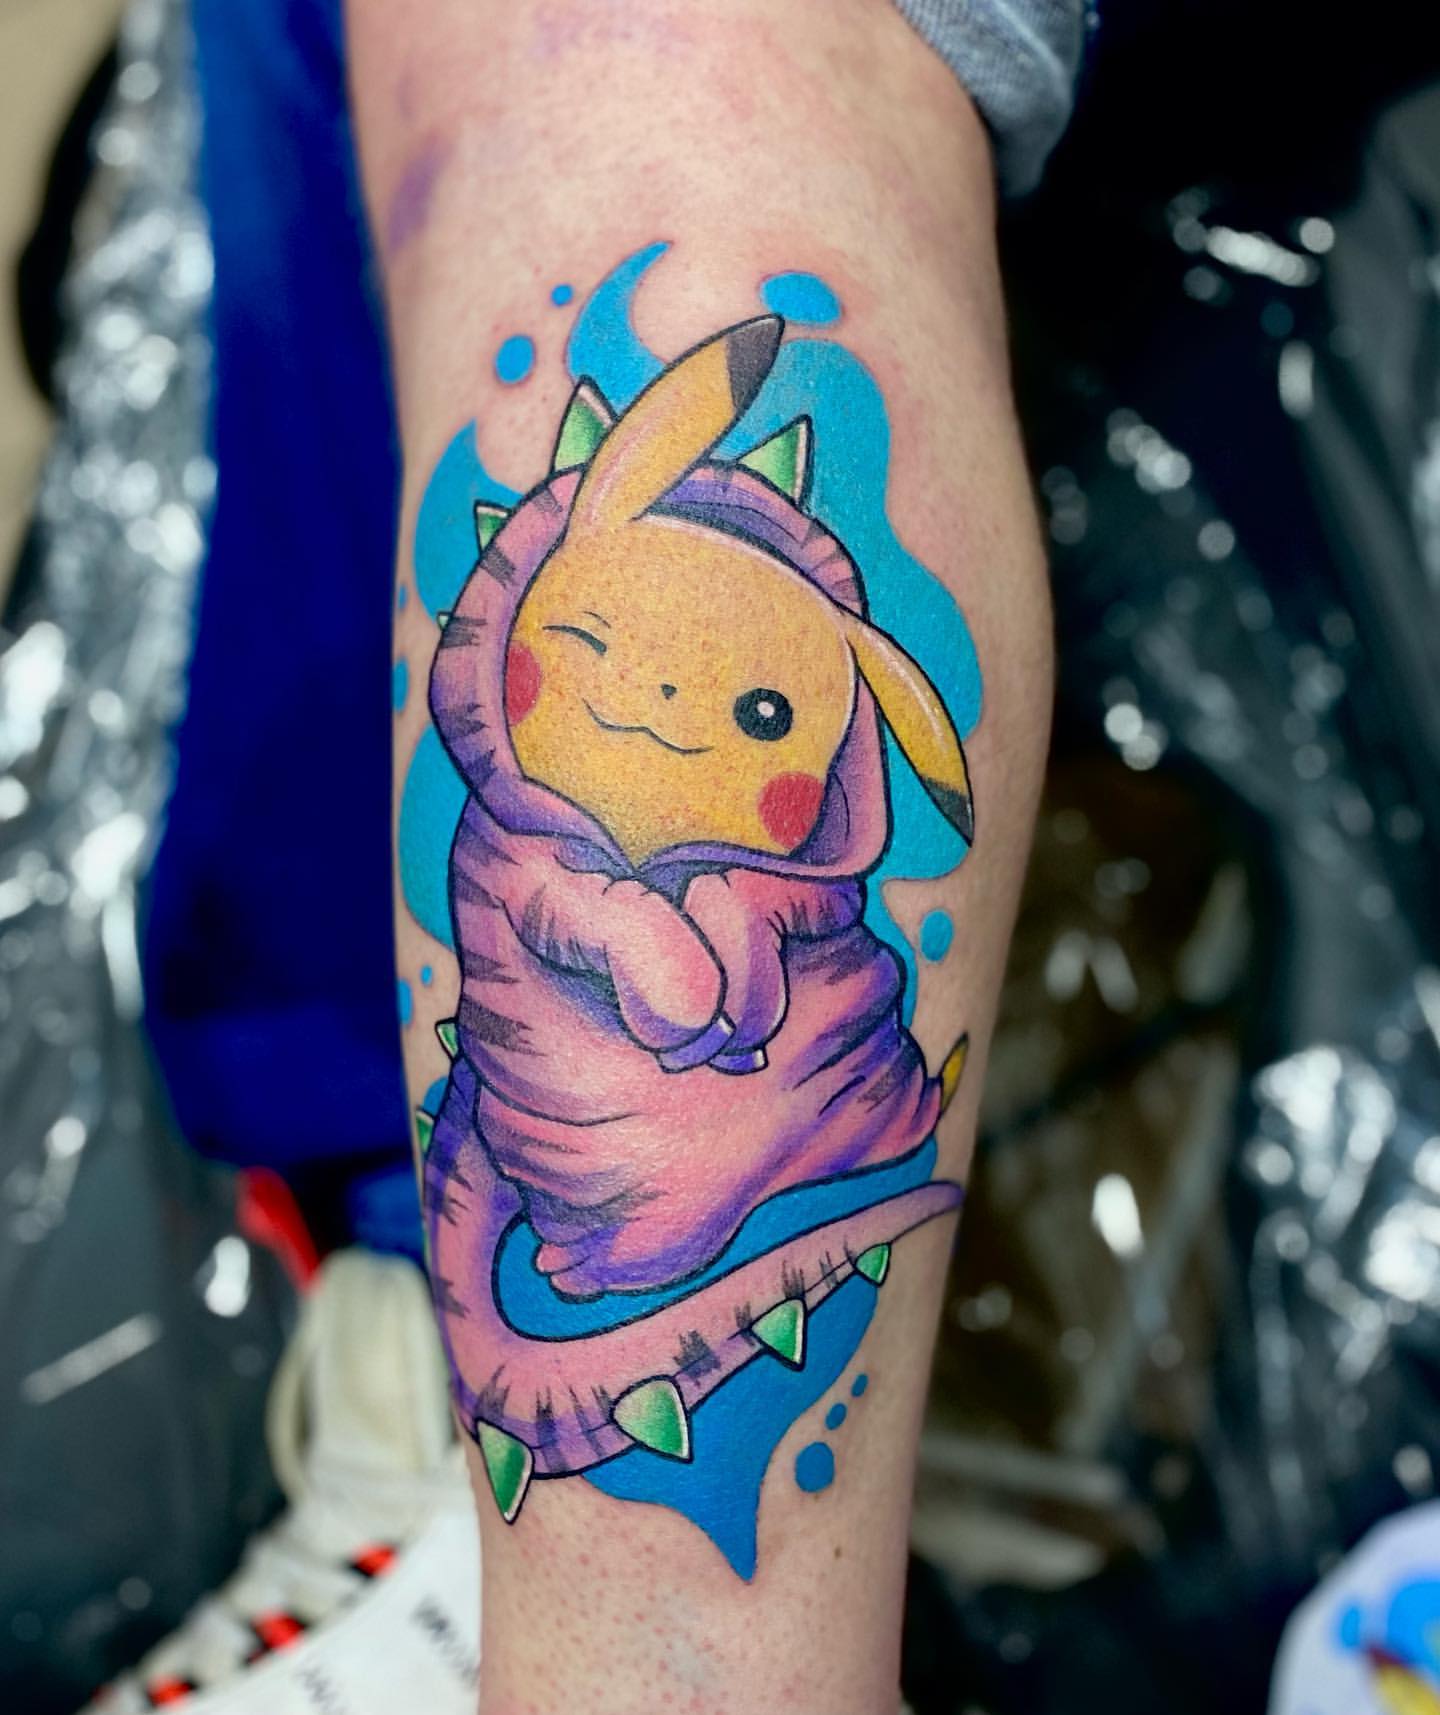 dessinez-vous un design de tatouage pokemon minimaliste personnalisé